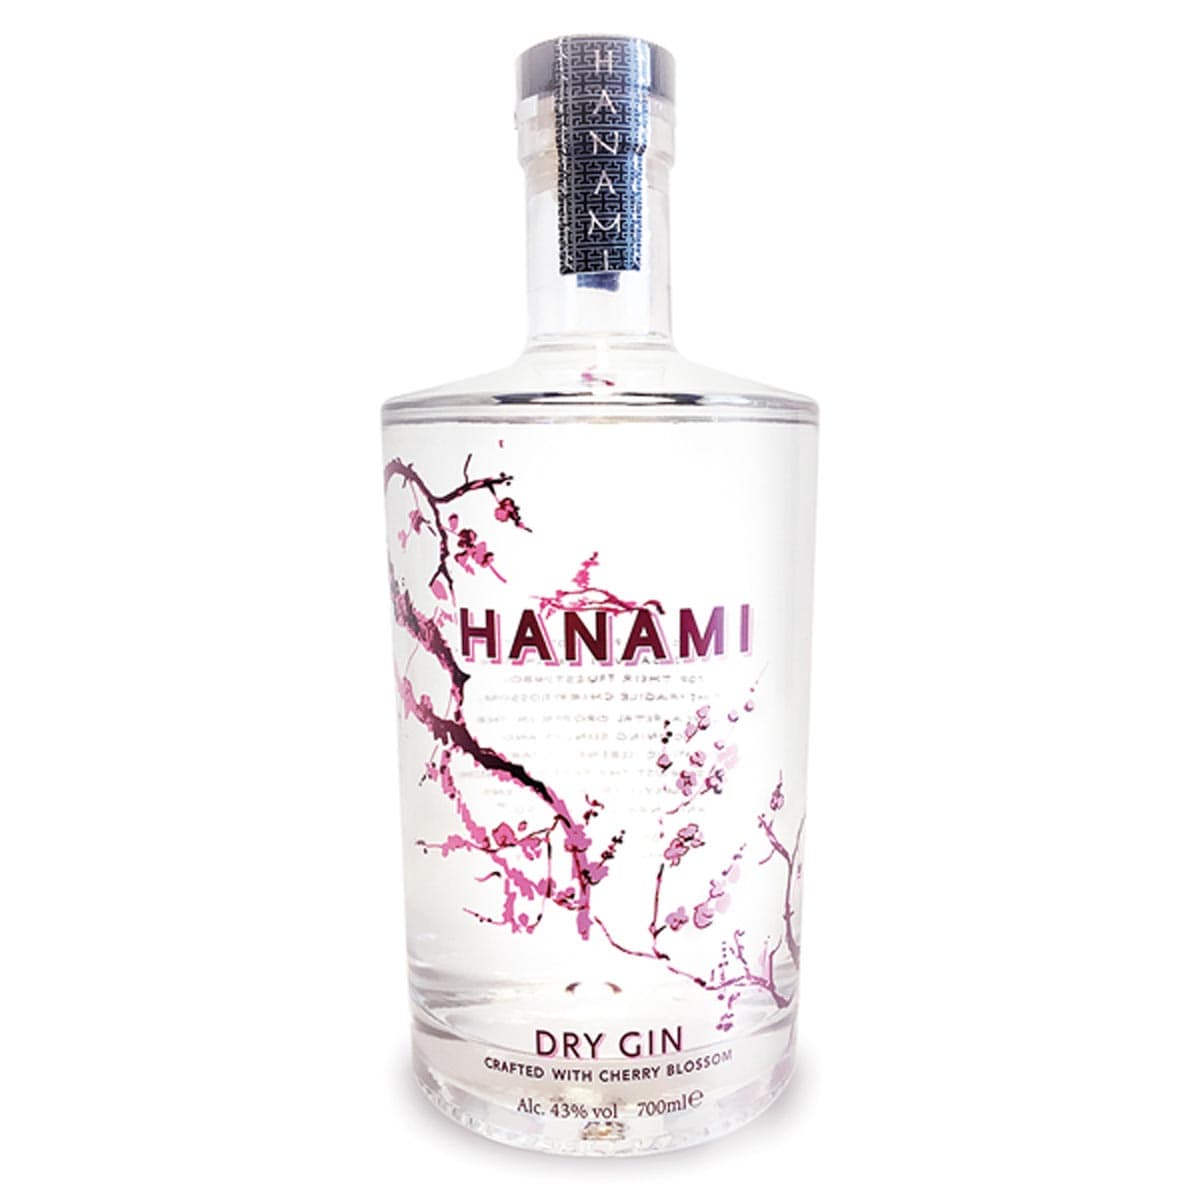 Hanami Dry Gin | kaufen online bei